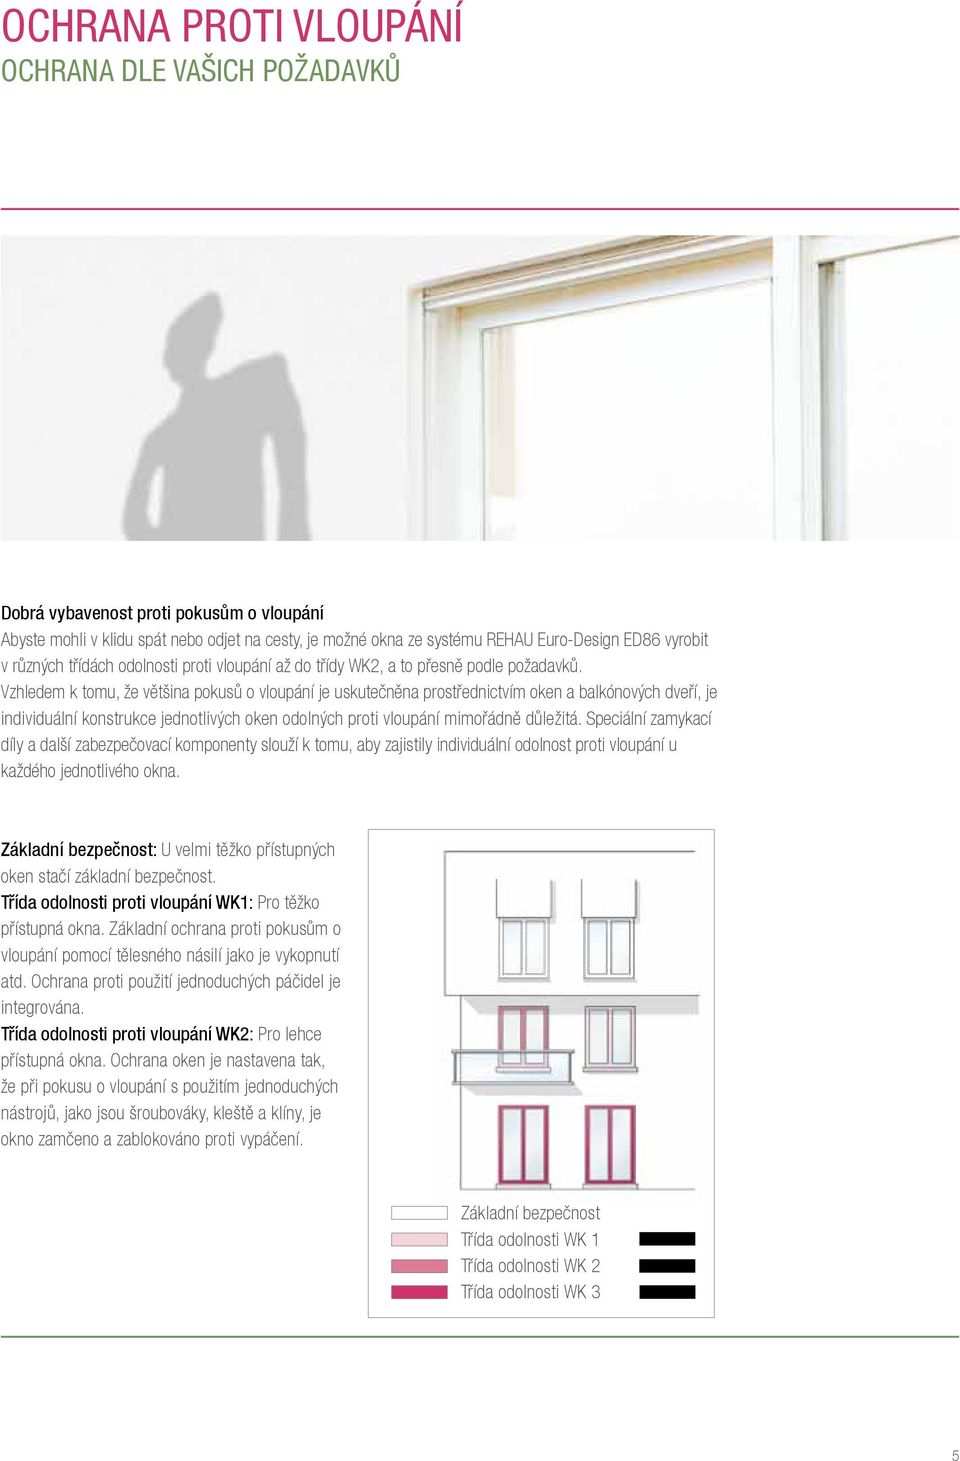 Vzhledem k tomu, že většina pokusů o vloupání je uskutečněna prostřednictvím oken a balkónových dveří, je individuální konstrukce jednotlivých oken odolných proti vloupání mimořádně důležitá.